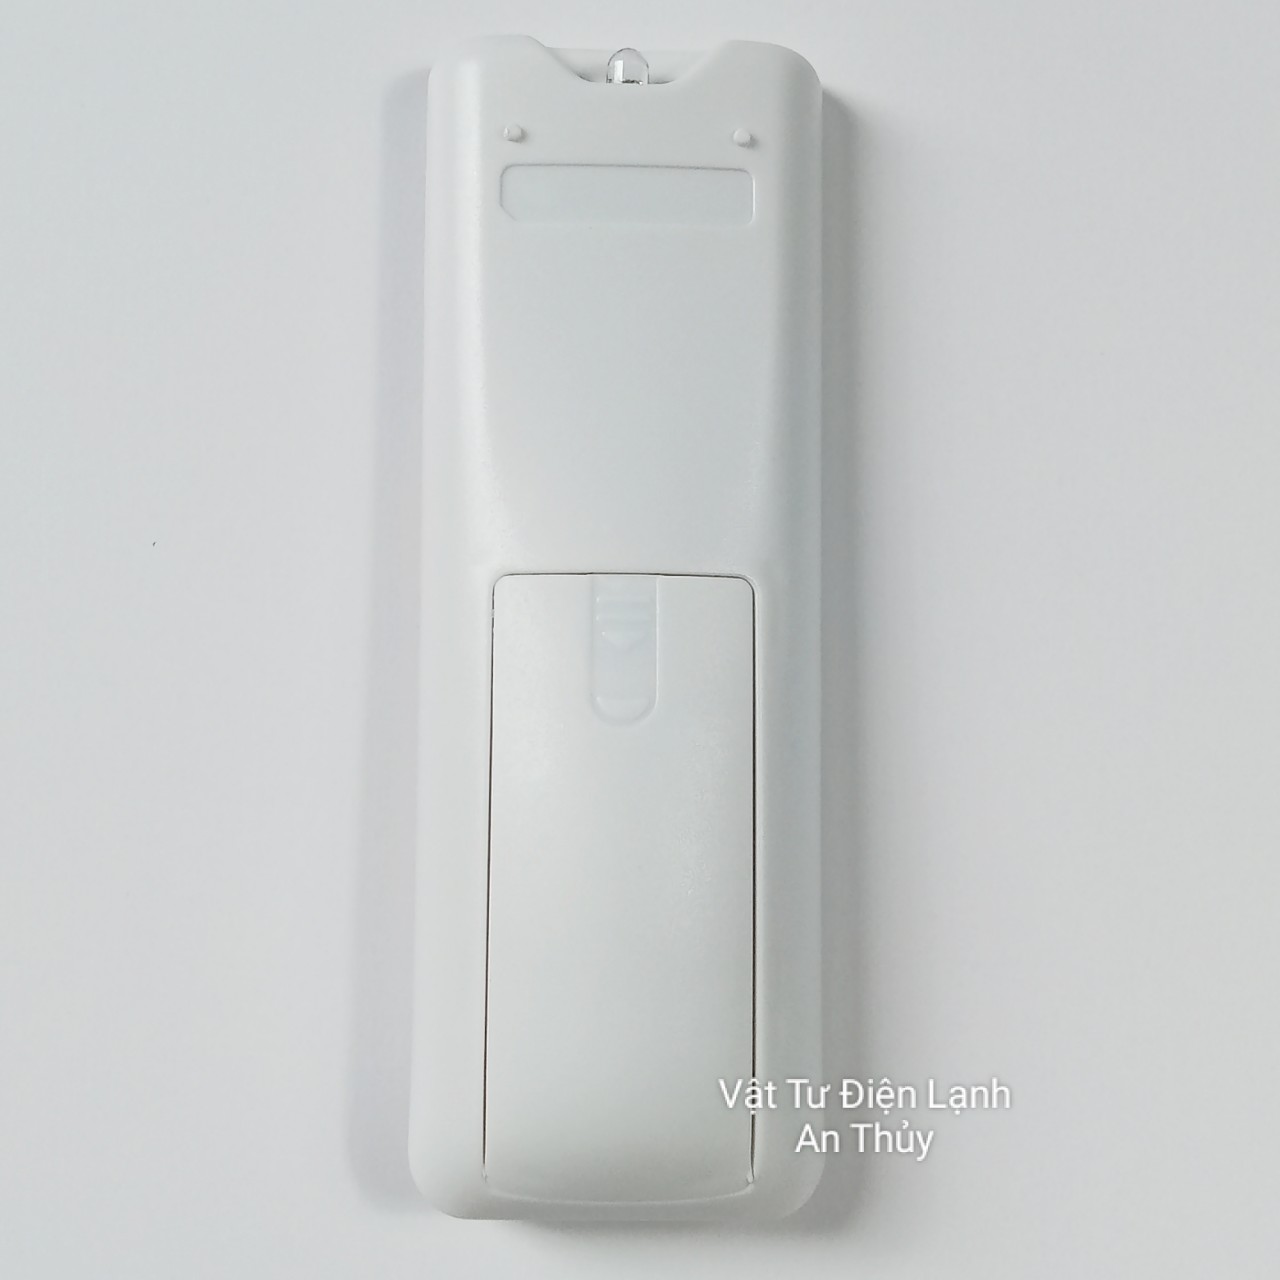 Remote máy lạnh SHARP INVER chiếc lá nút nguồn đỏ có nút ion màu xanh dương nhạt - Điều khiển máy lạnh SHARP INVER